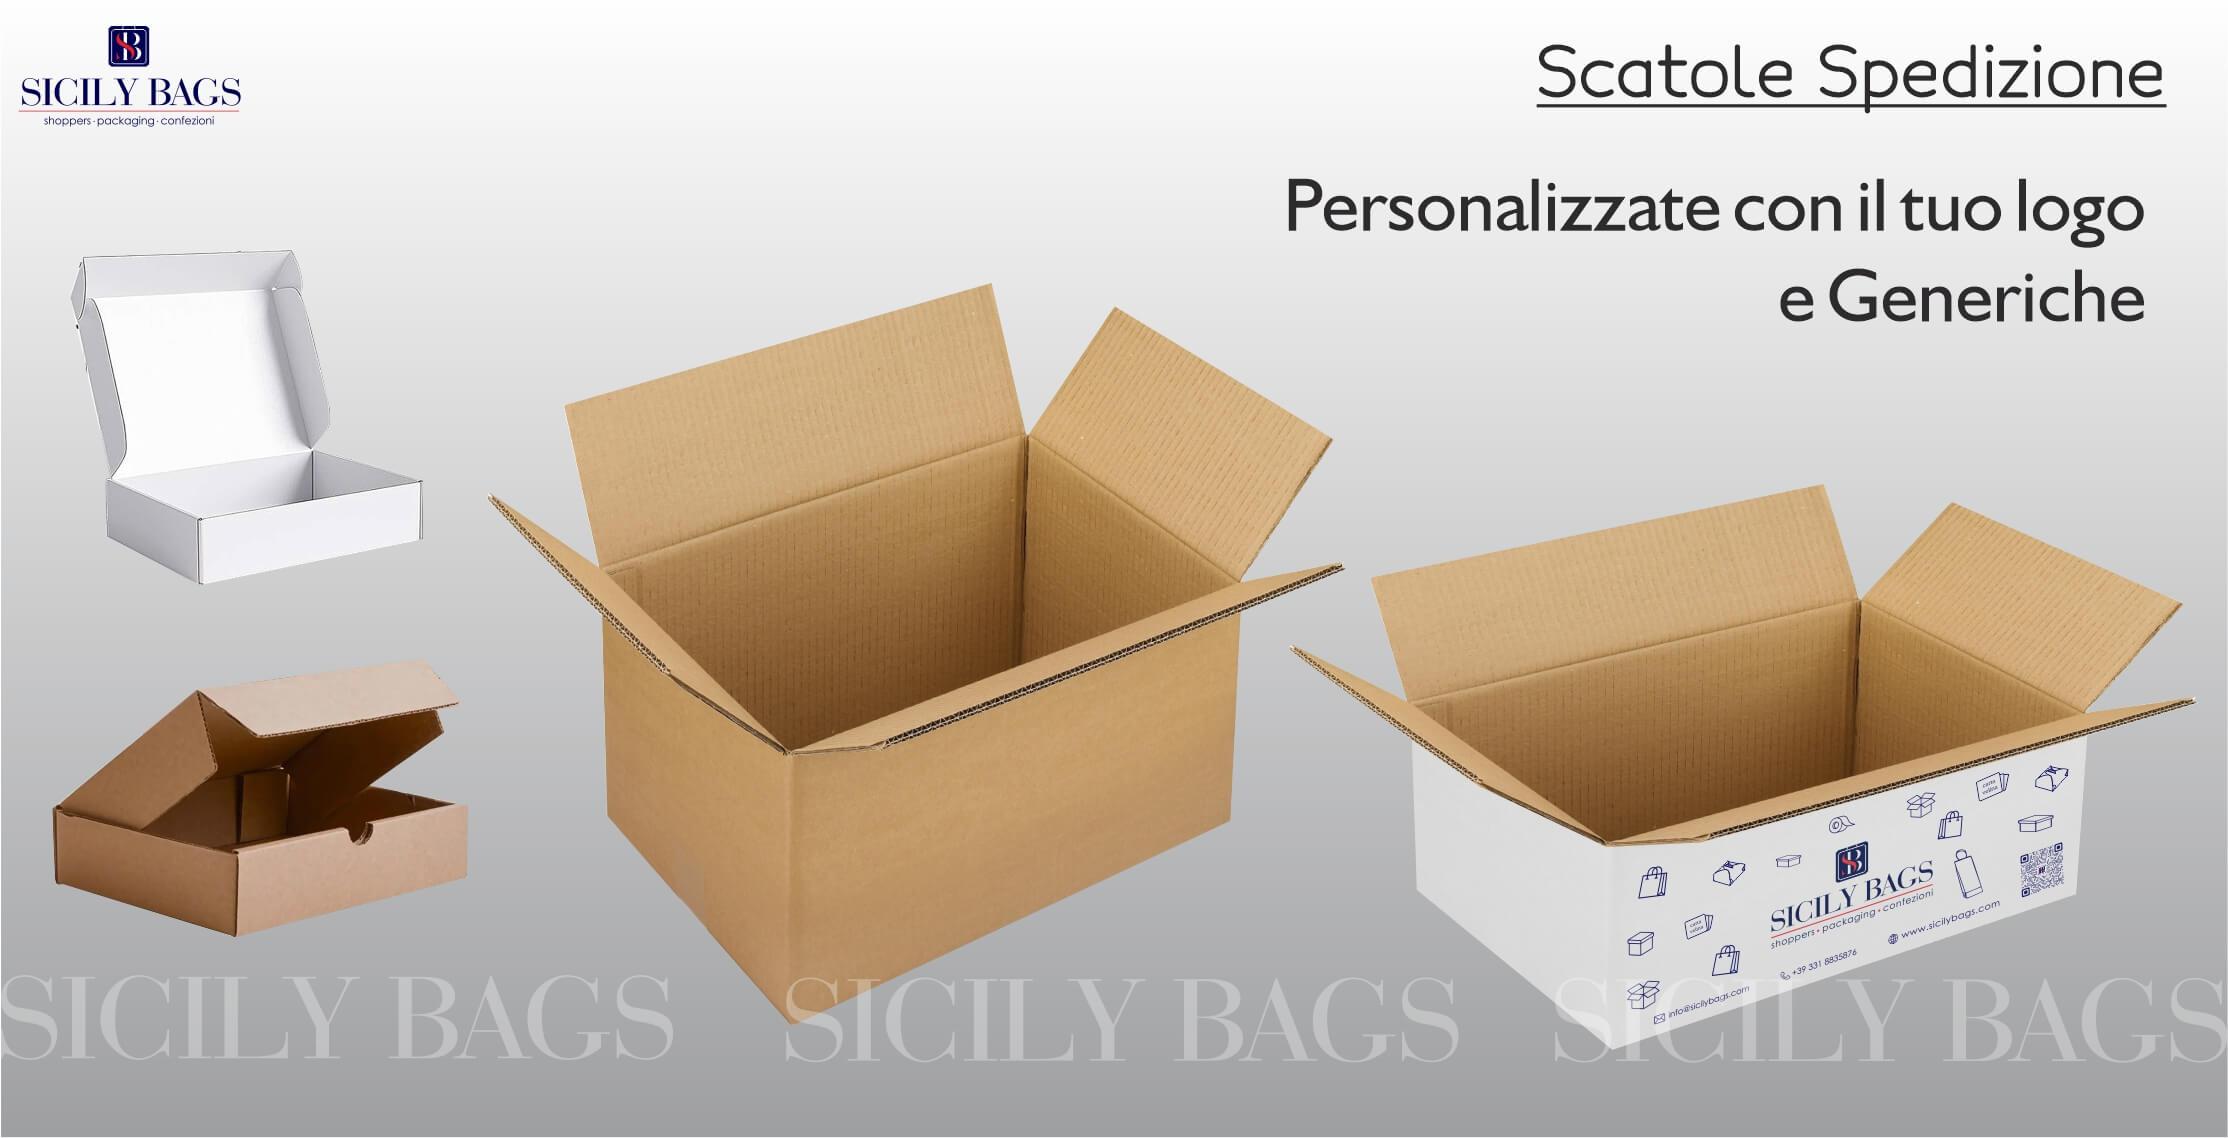 scatole spedizione, scatole imballaggio, scatole americana, scatole e-commerce, pacchi spedizione, pacchi imballaggio, scatole personalizzate, scatole logo,